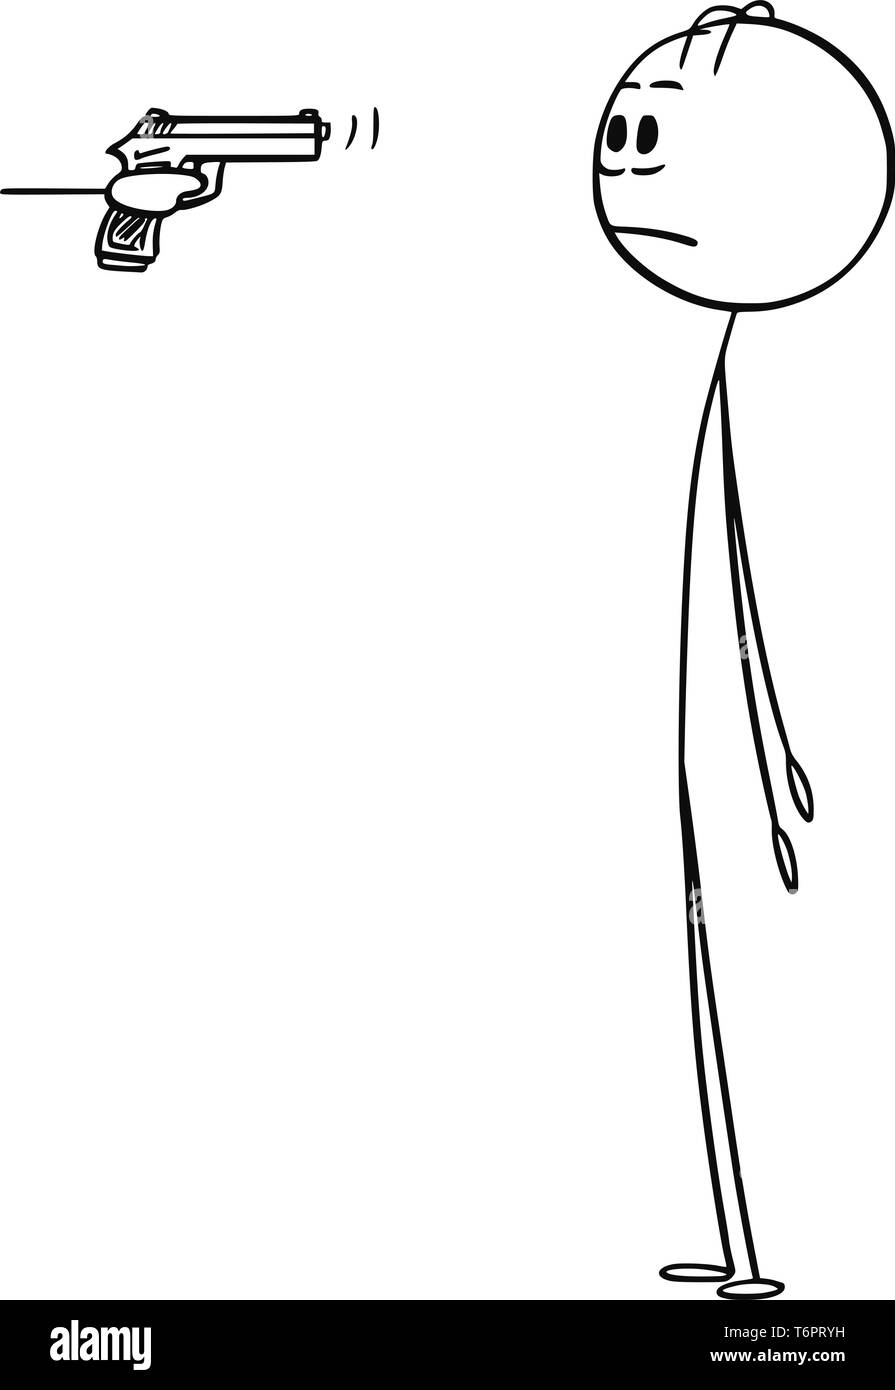 Cartoon Strichmännchen Zeichnung konzeptuelle Darstellung von Hand mit Gewehr oder halbautomatische Pistole auf Kopf oder schockiert Mann oder Geschäftsmann. Stock Vektor